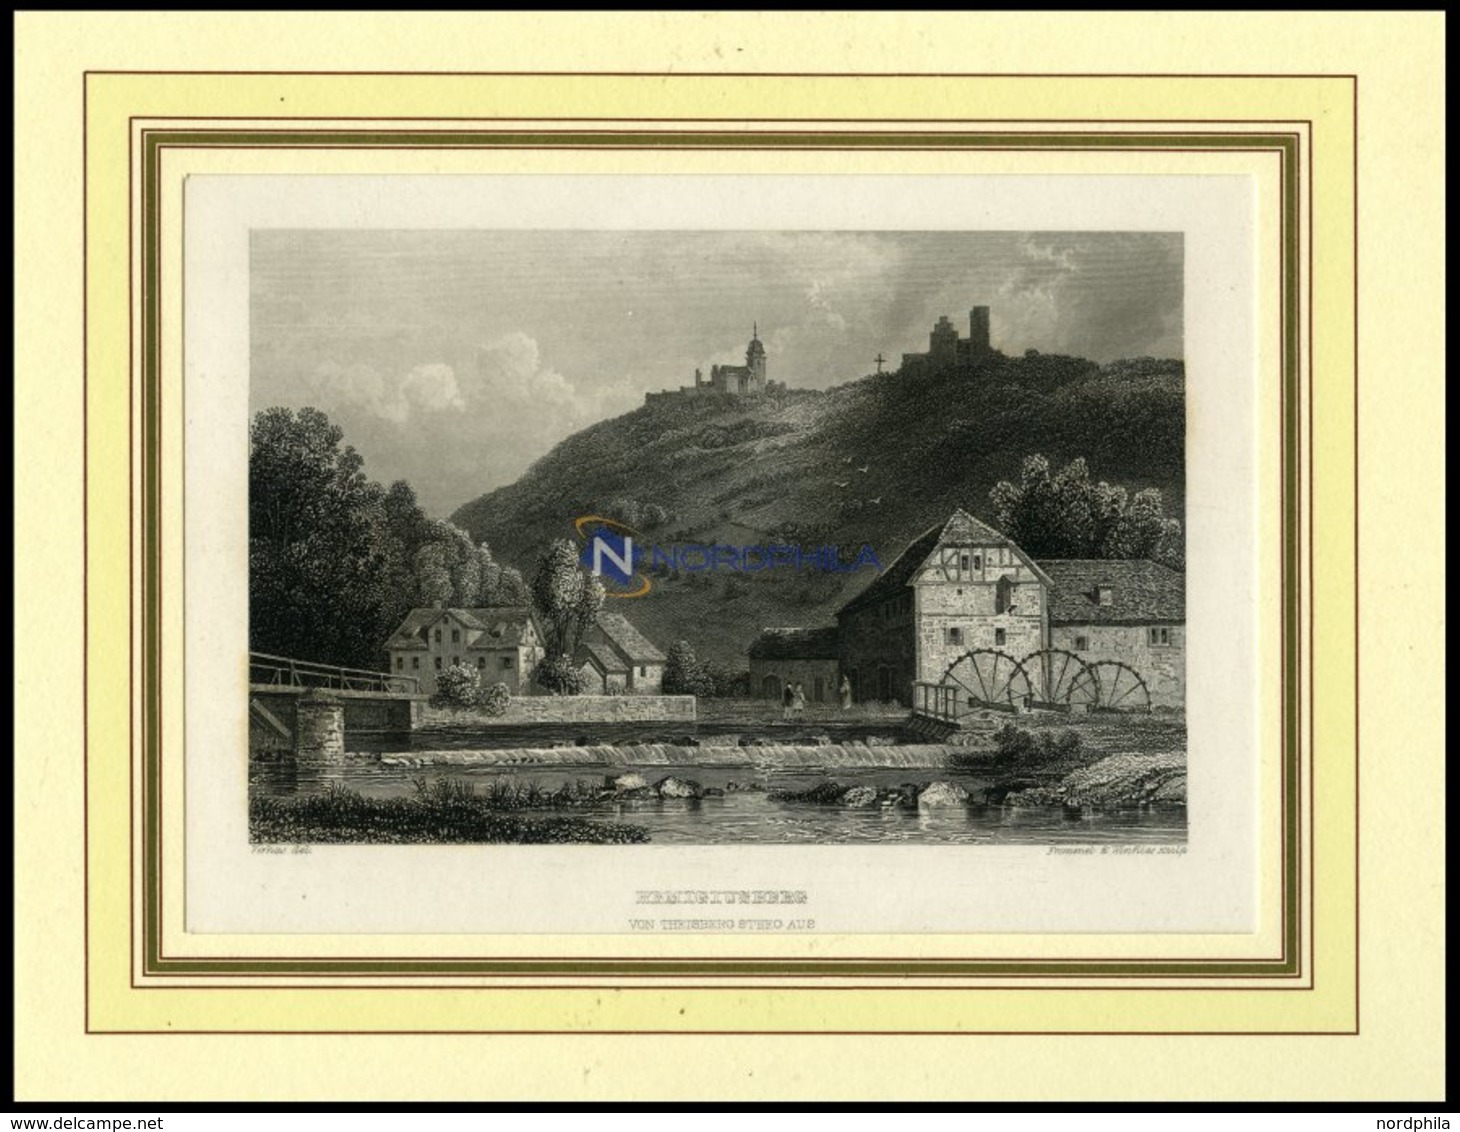 REMIGIUSBERG Vom Theisbergsteeg Aus, Stahlstich Von Verhas/Frommel/Winkles Um 1840 - Lithographien